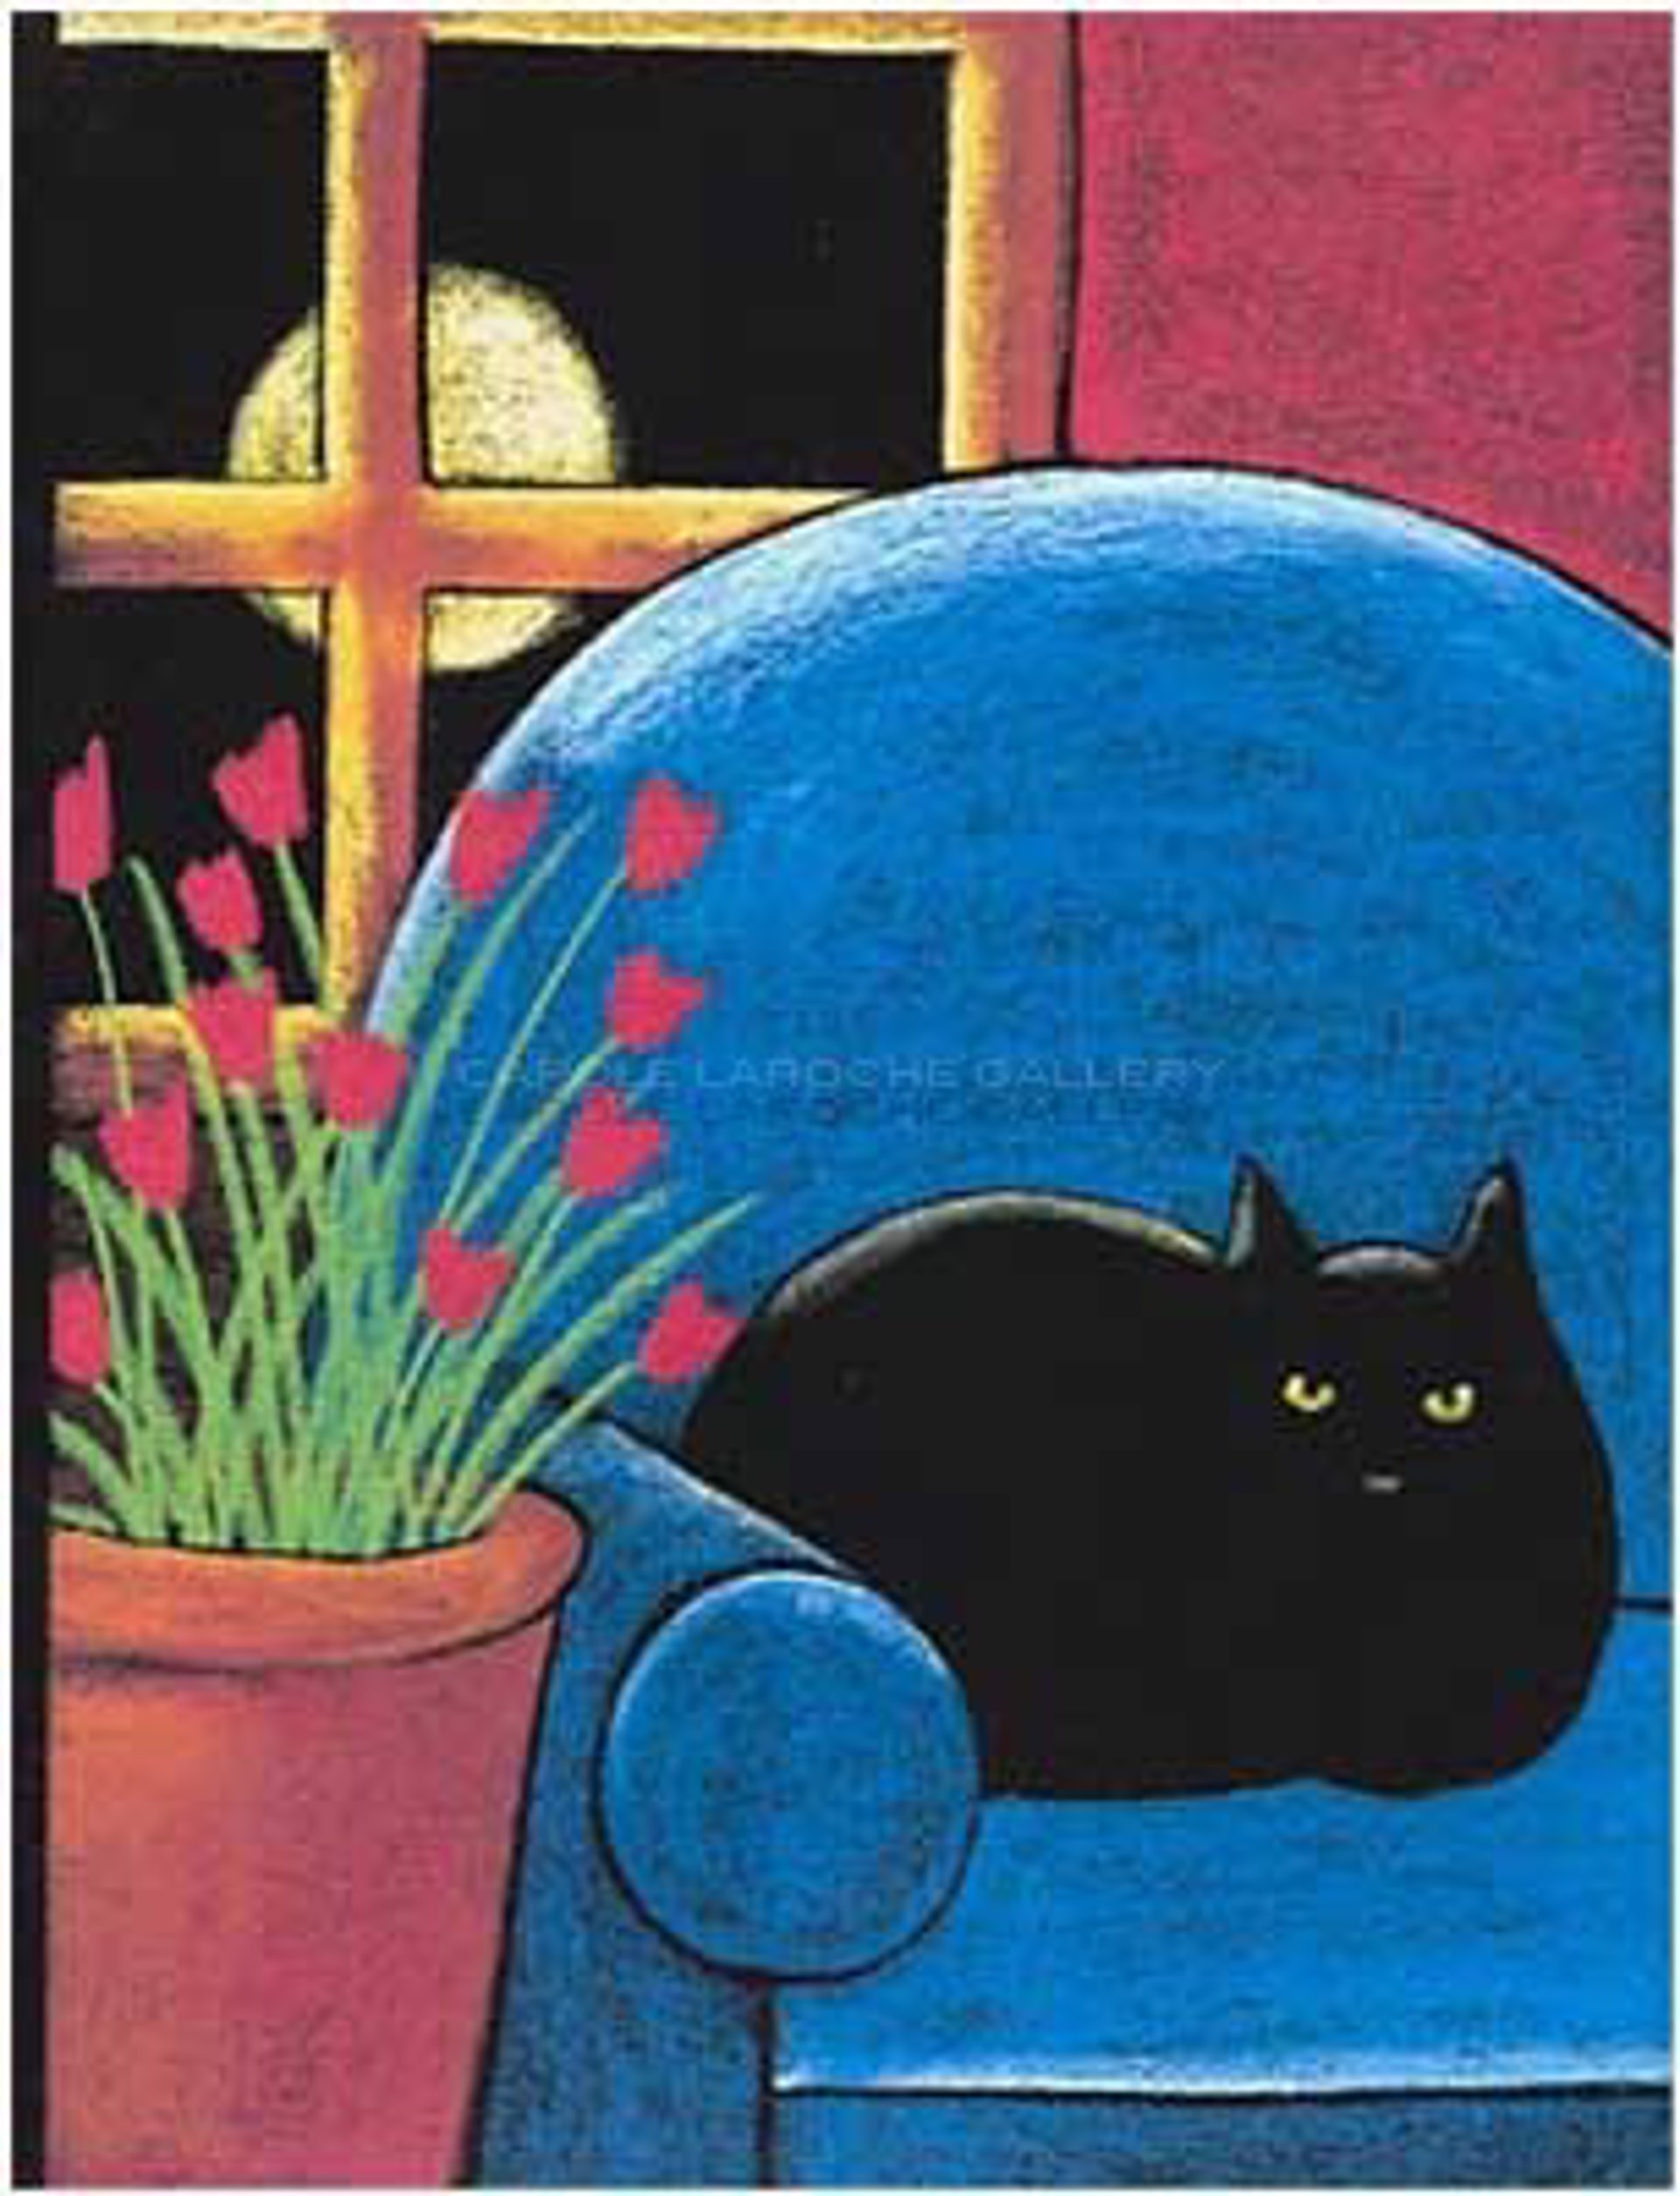 Black Cat in Blue Chair by Carole LaRoche